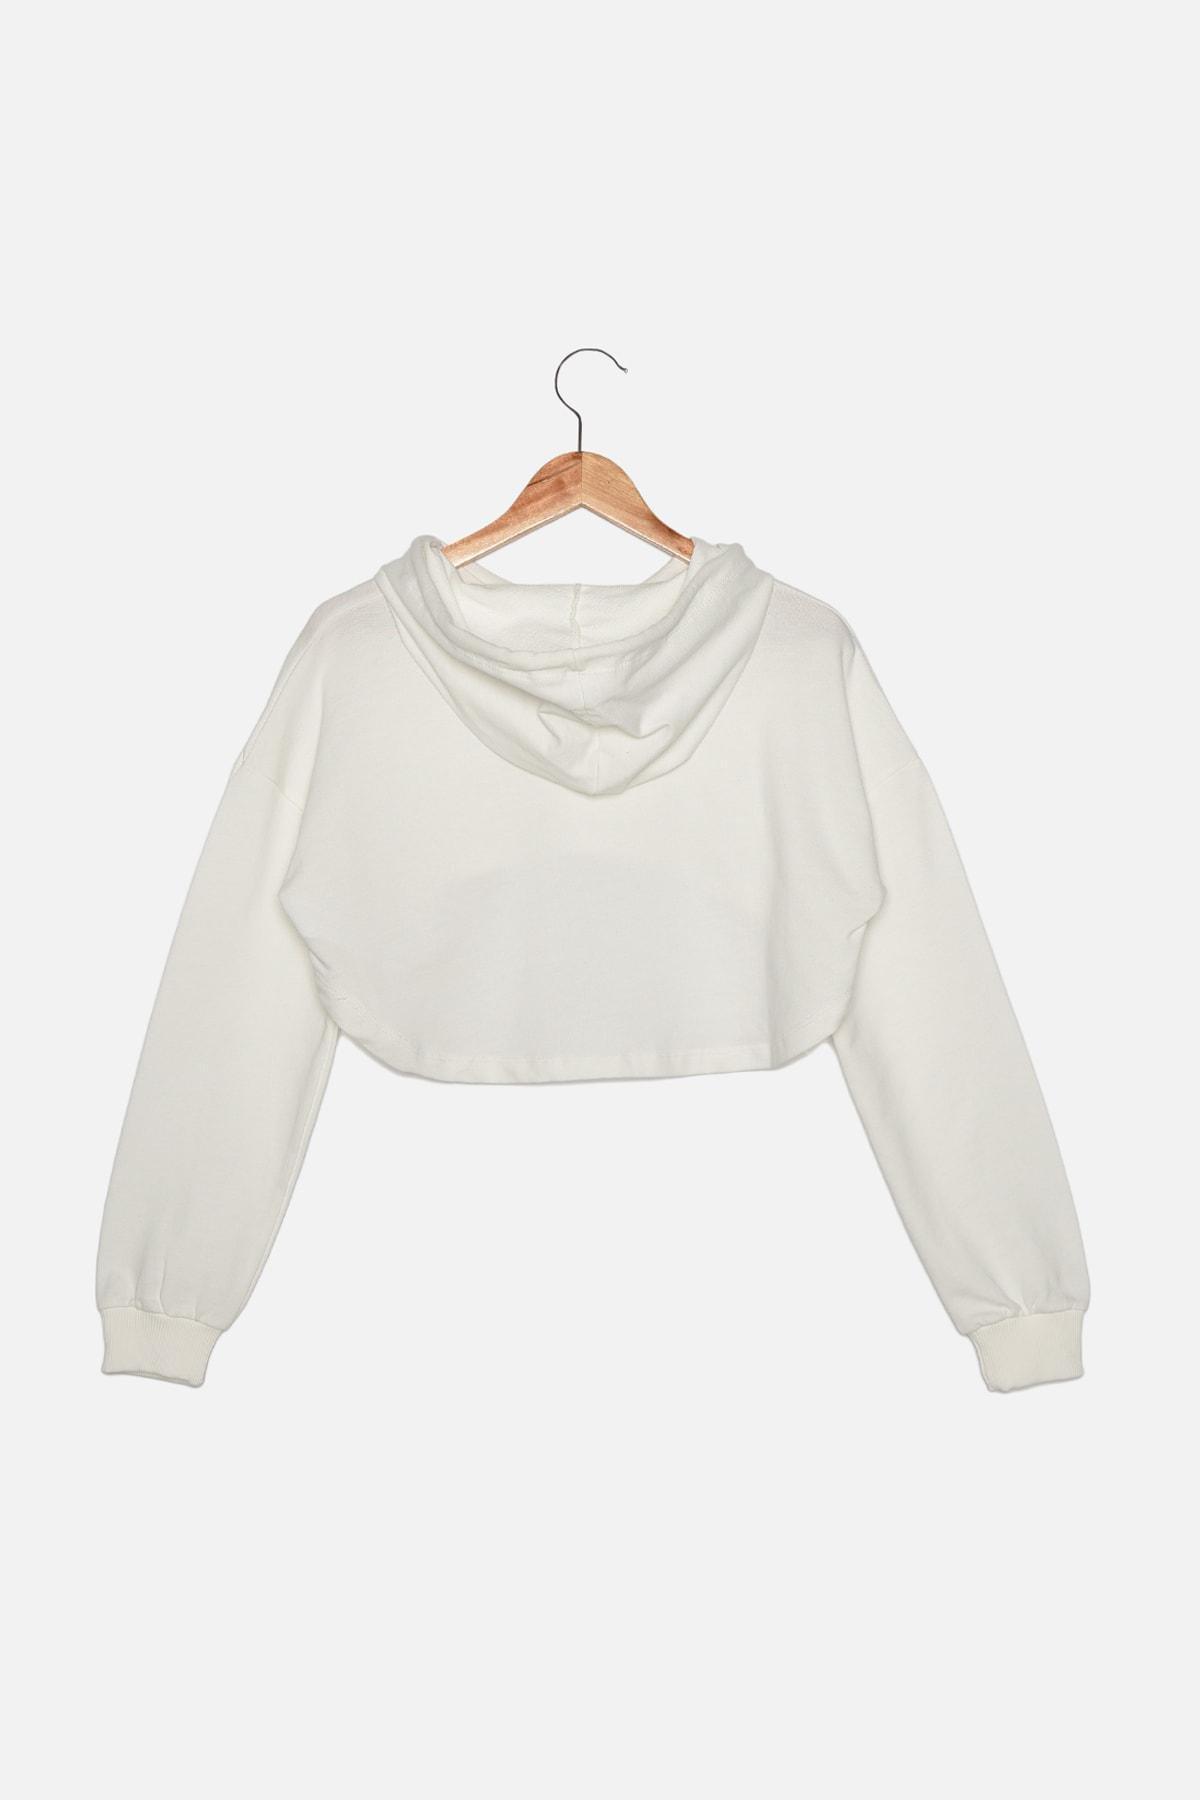 Trendyol - White Crop Hoodie Sports Sweatshirt